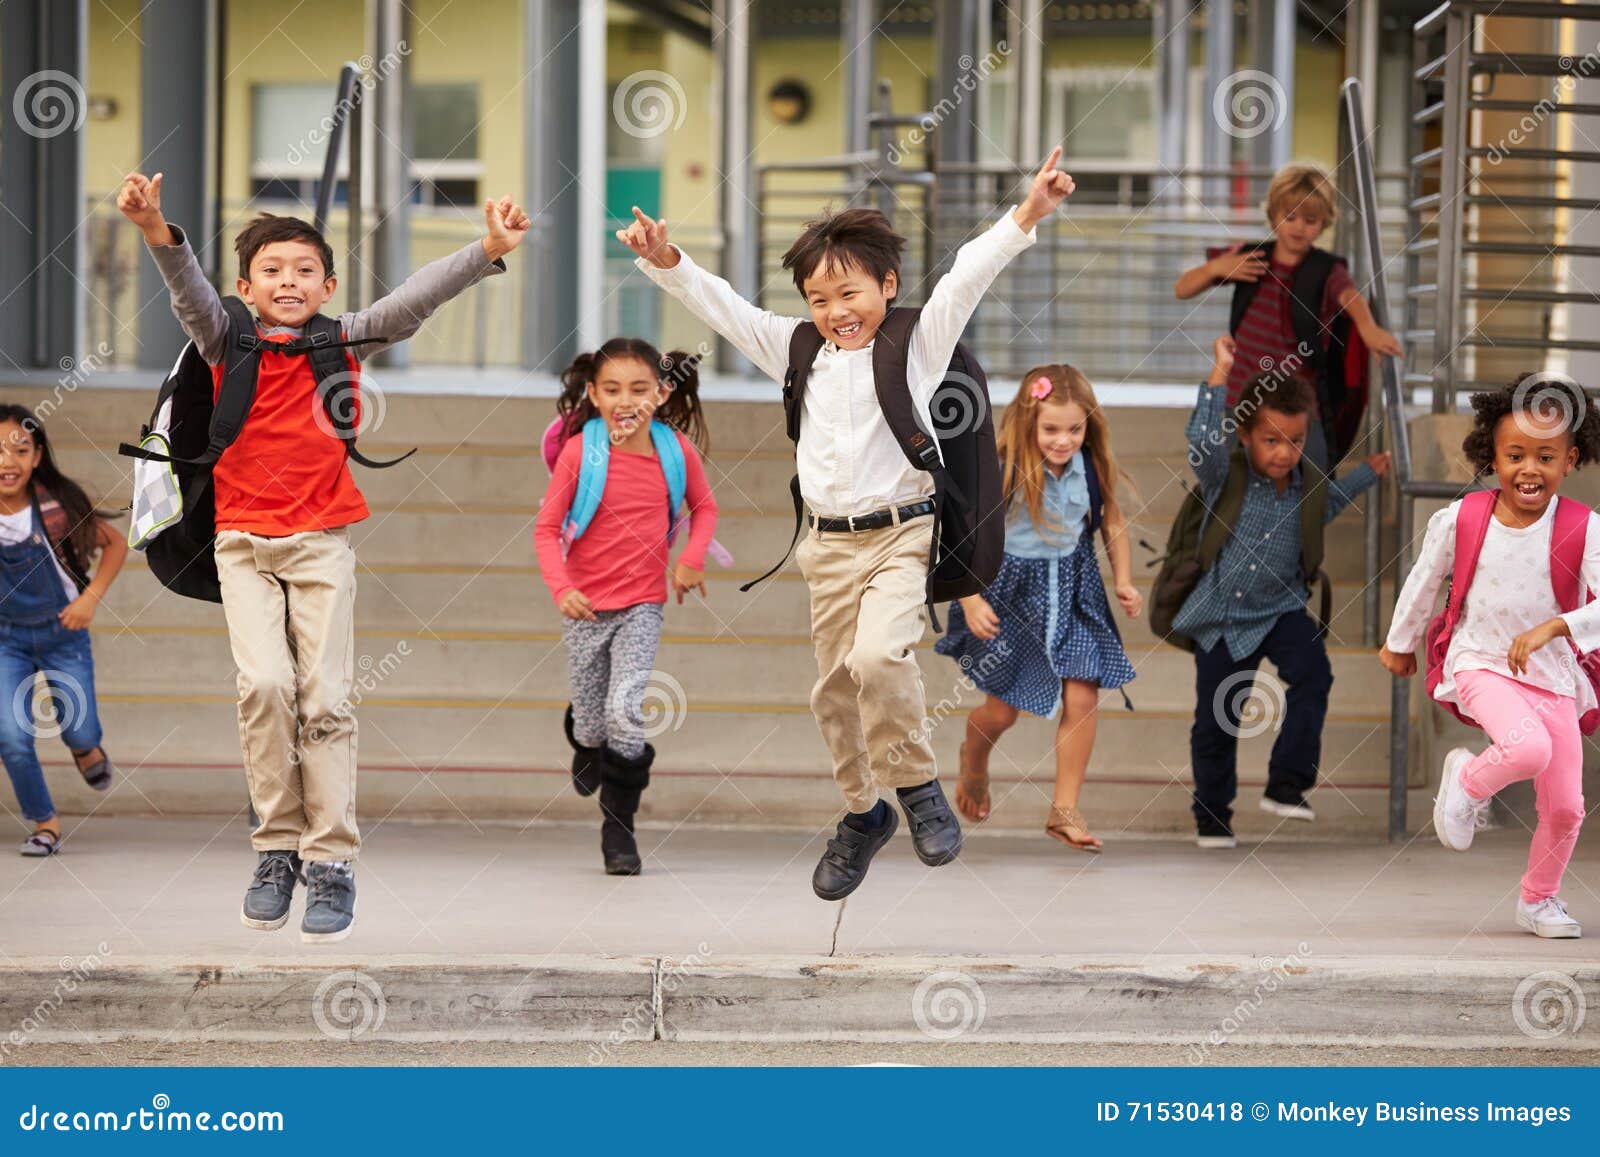 a group of energetic ary school kids leaving school